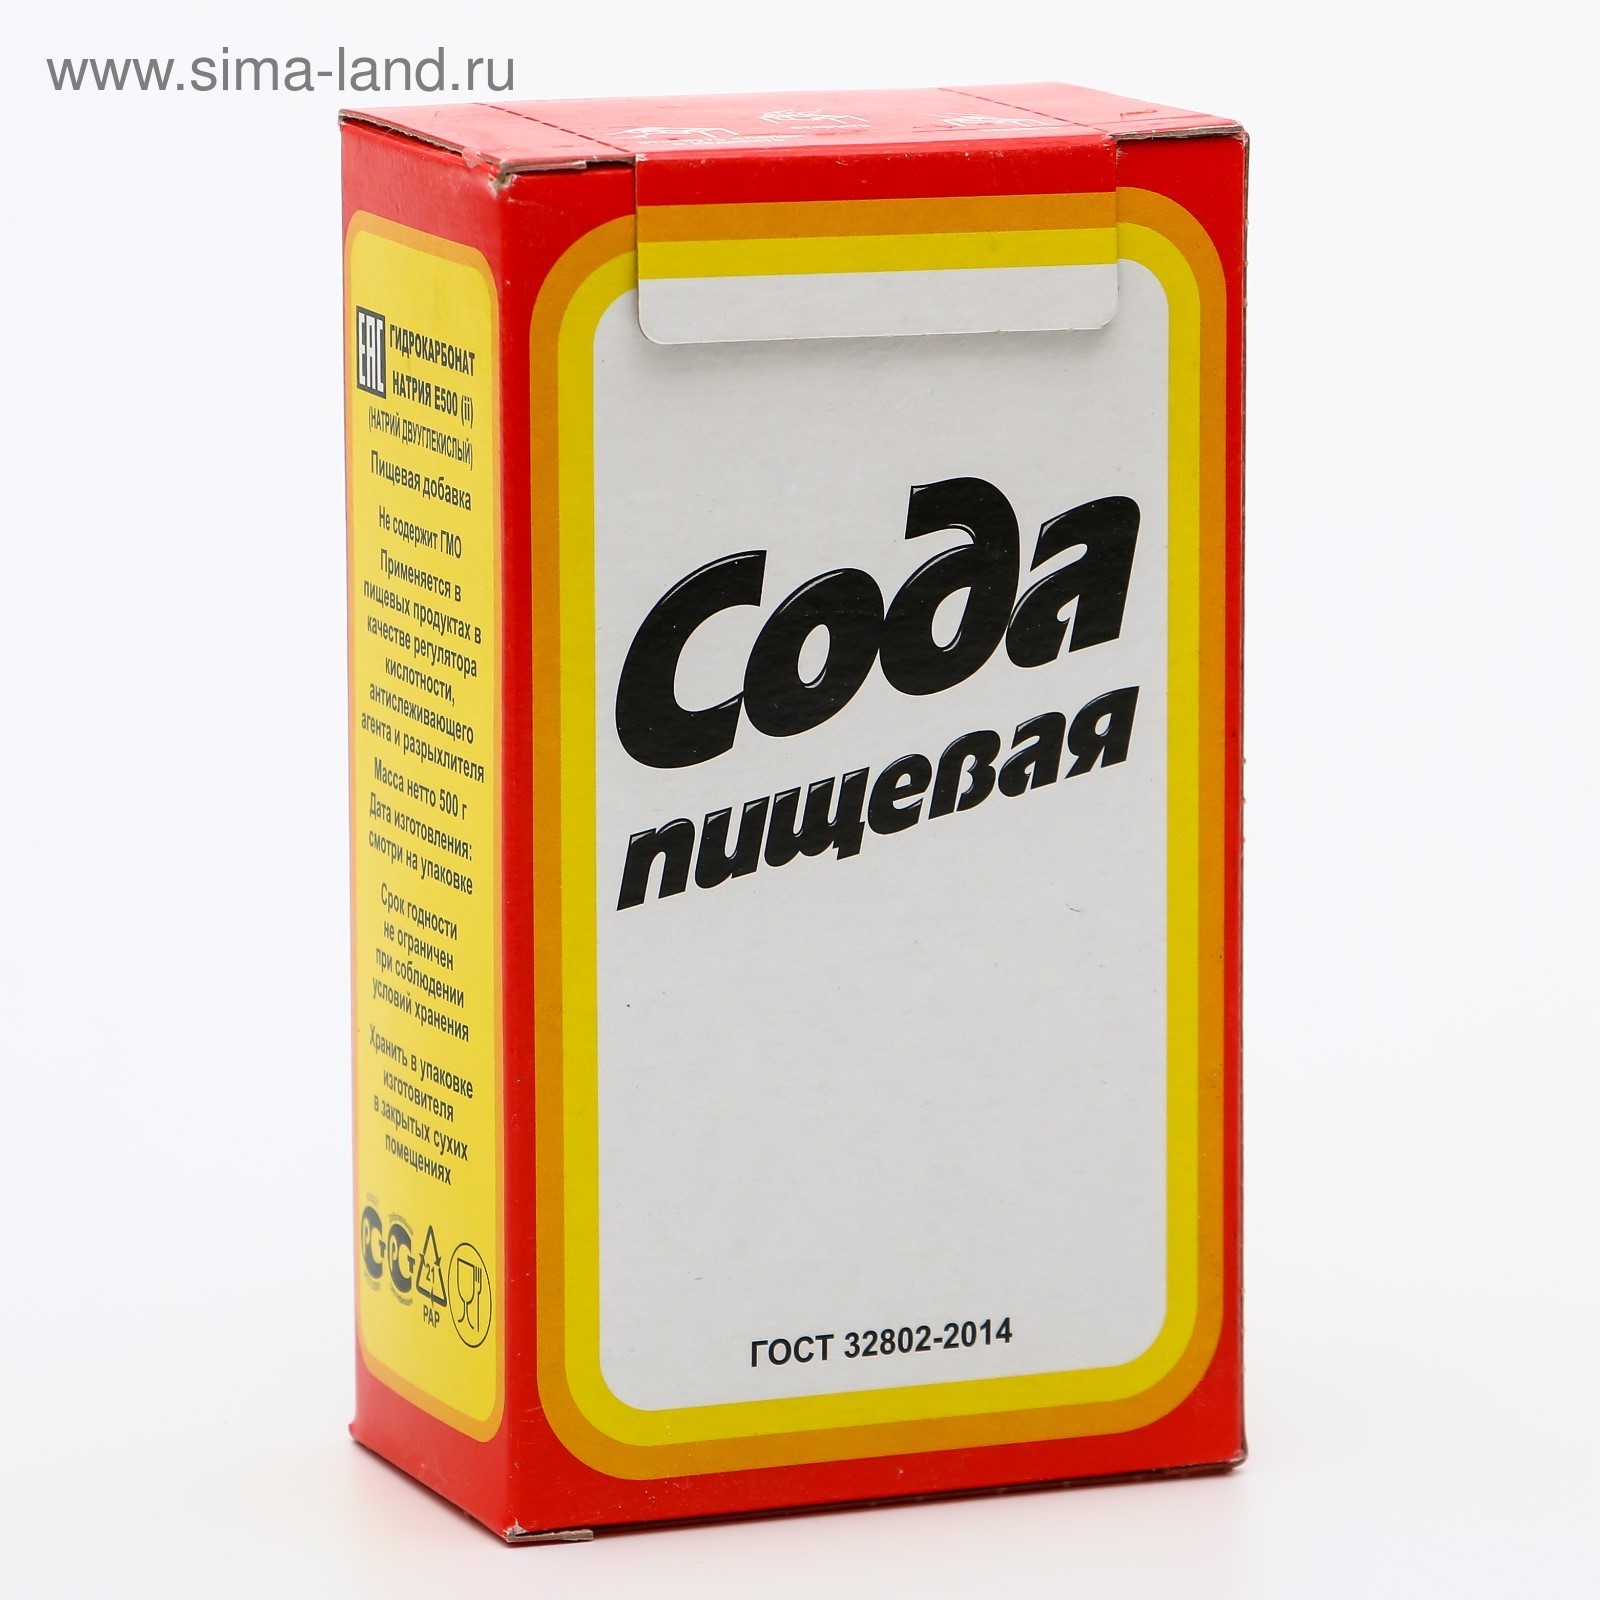 Сода пищевая, 500 г (5087662) - Купить по цене от 41.20 руб.